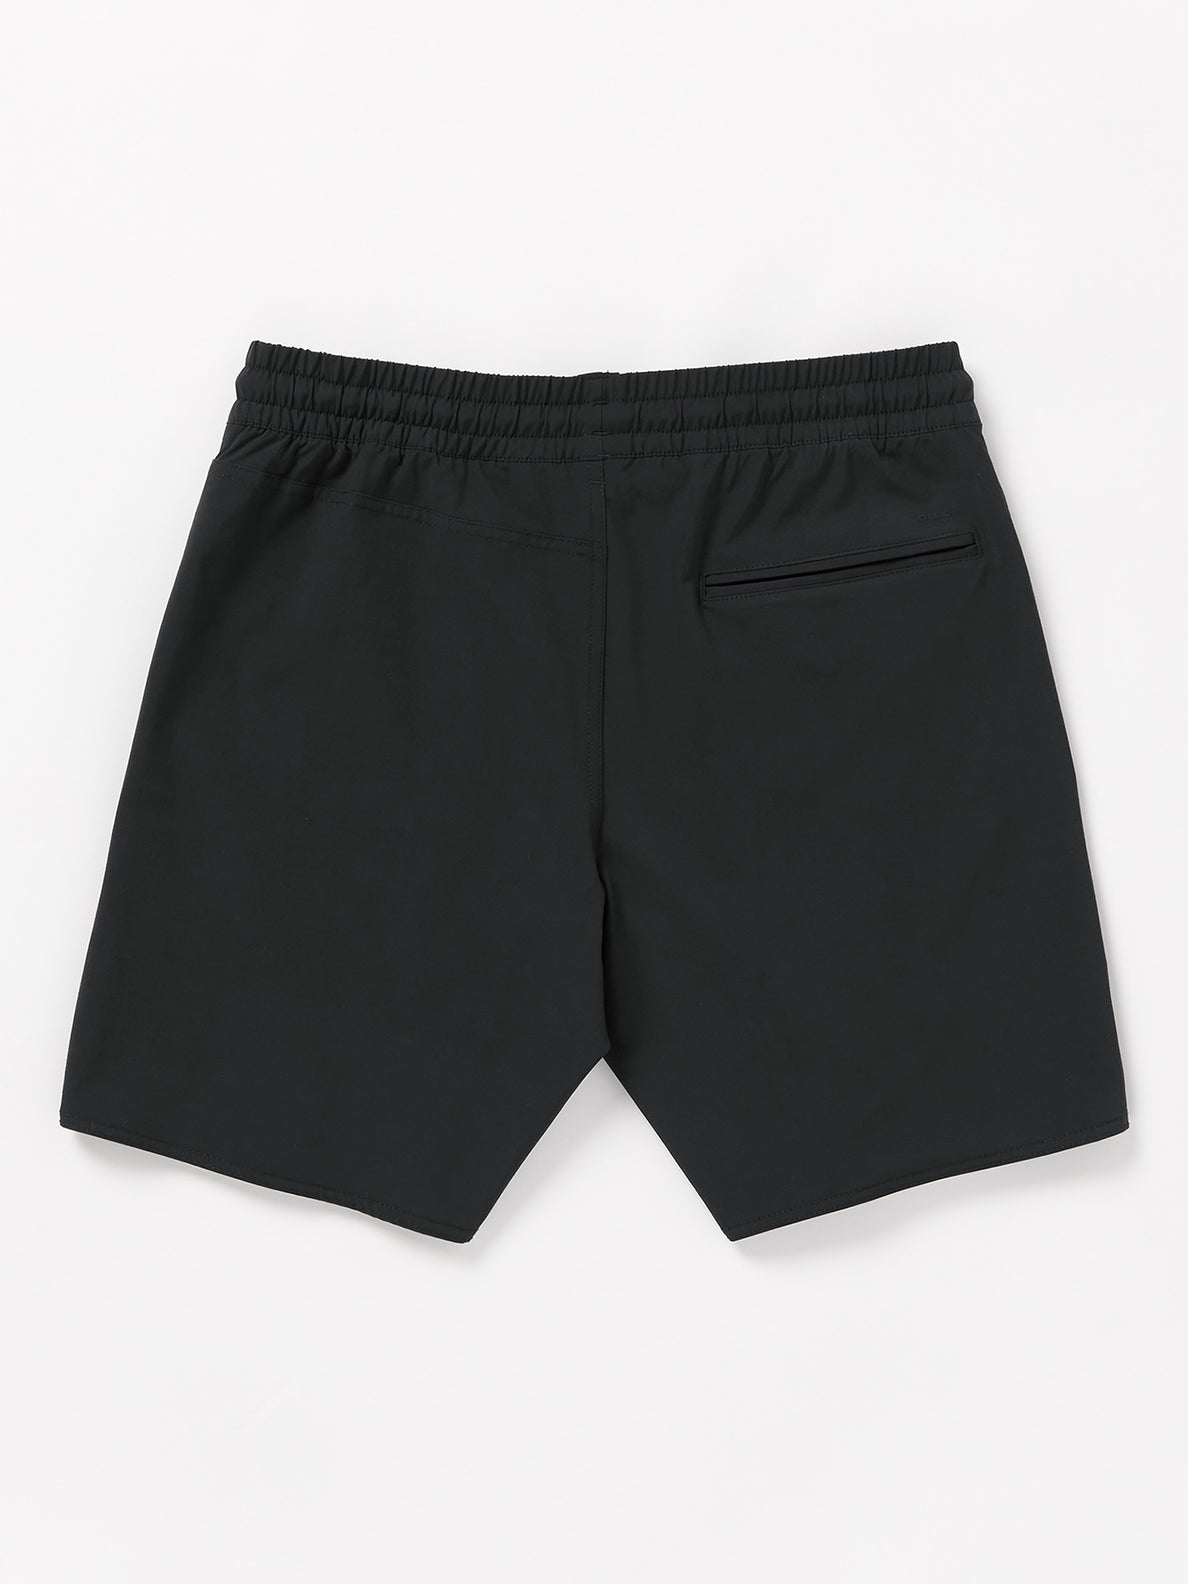 Nomoly Hybrid Shorts - Black